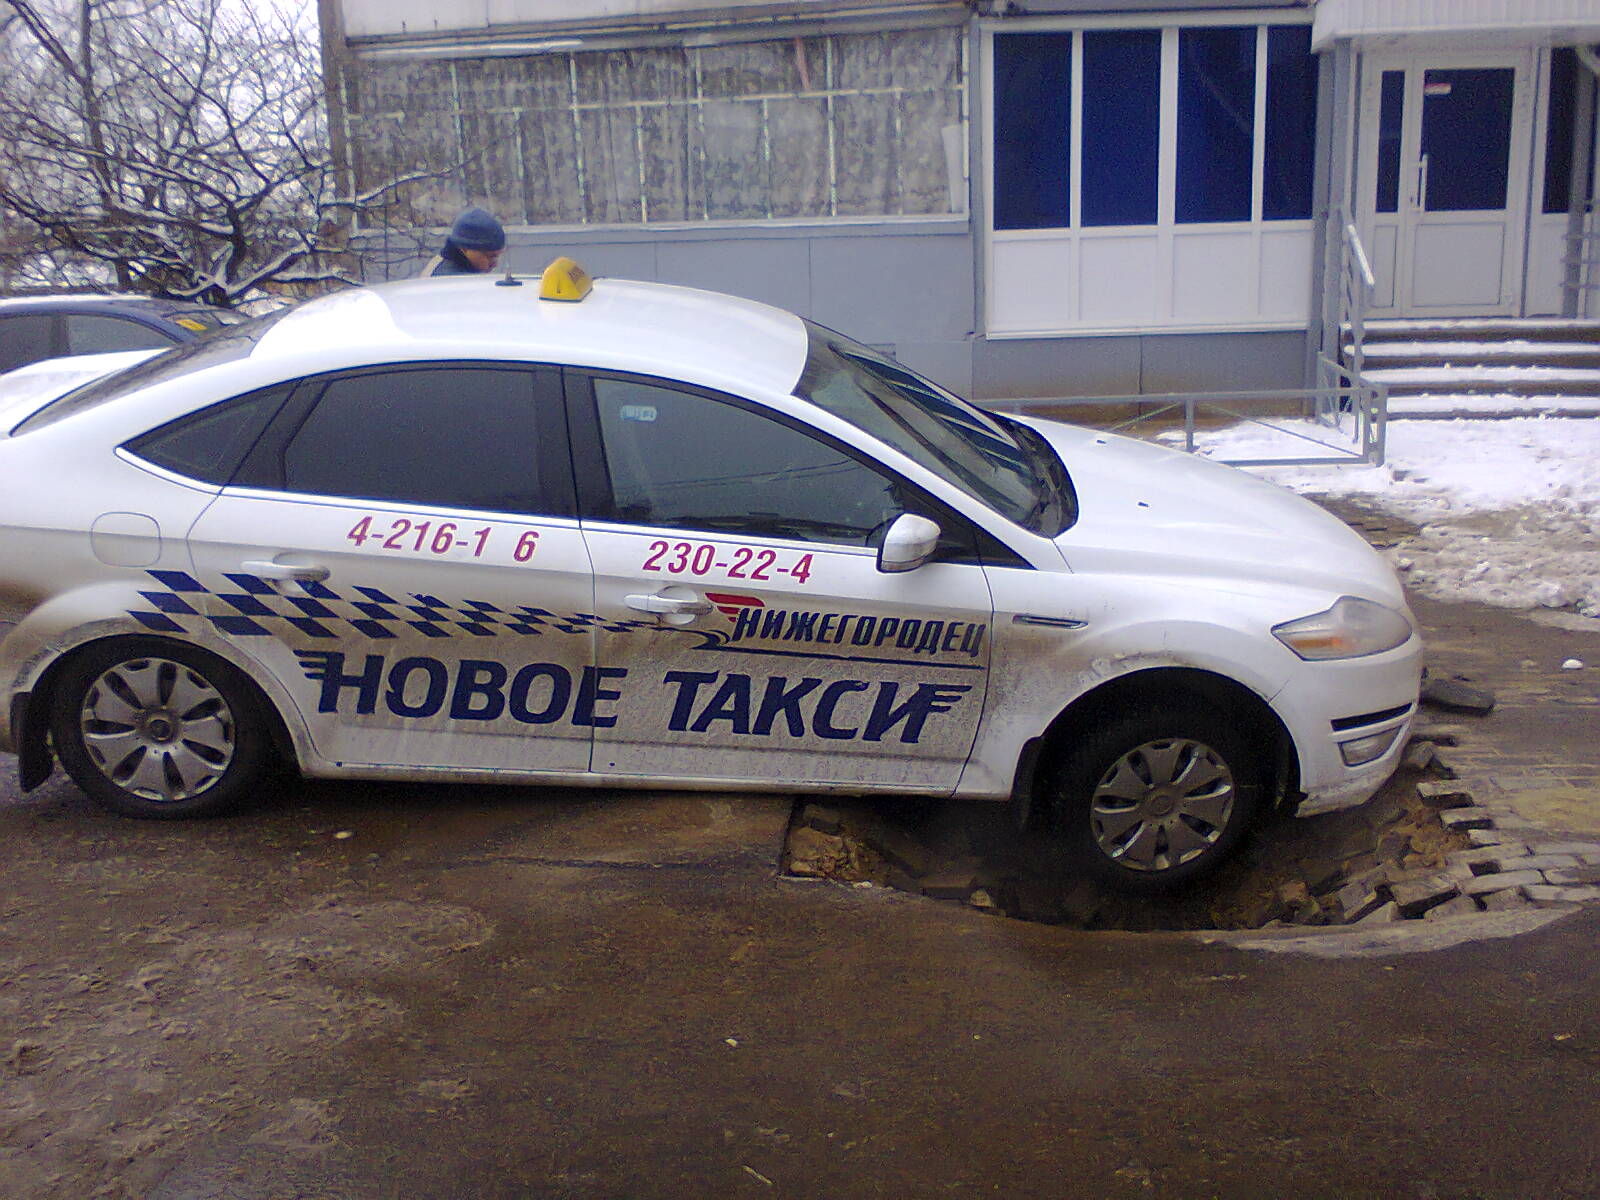 Таксопарк новые. Таксопарк Нижегородец. Новое такси. Такси Нижегородец в Нижнем Новгороде.